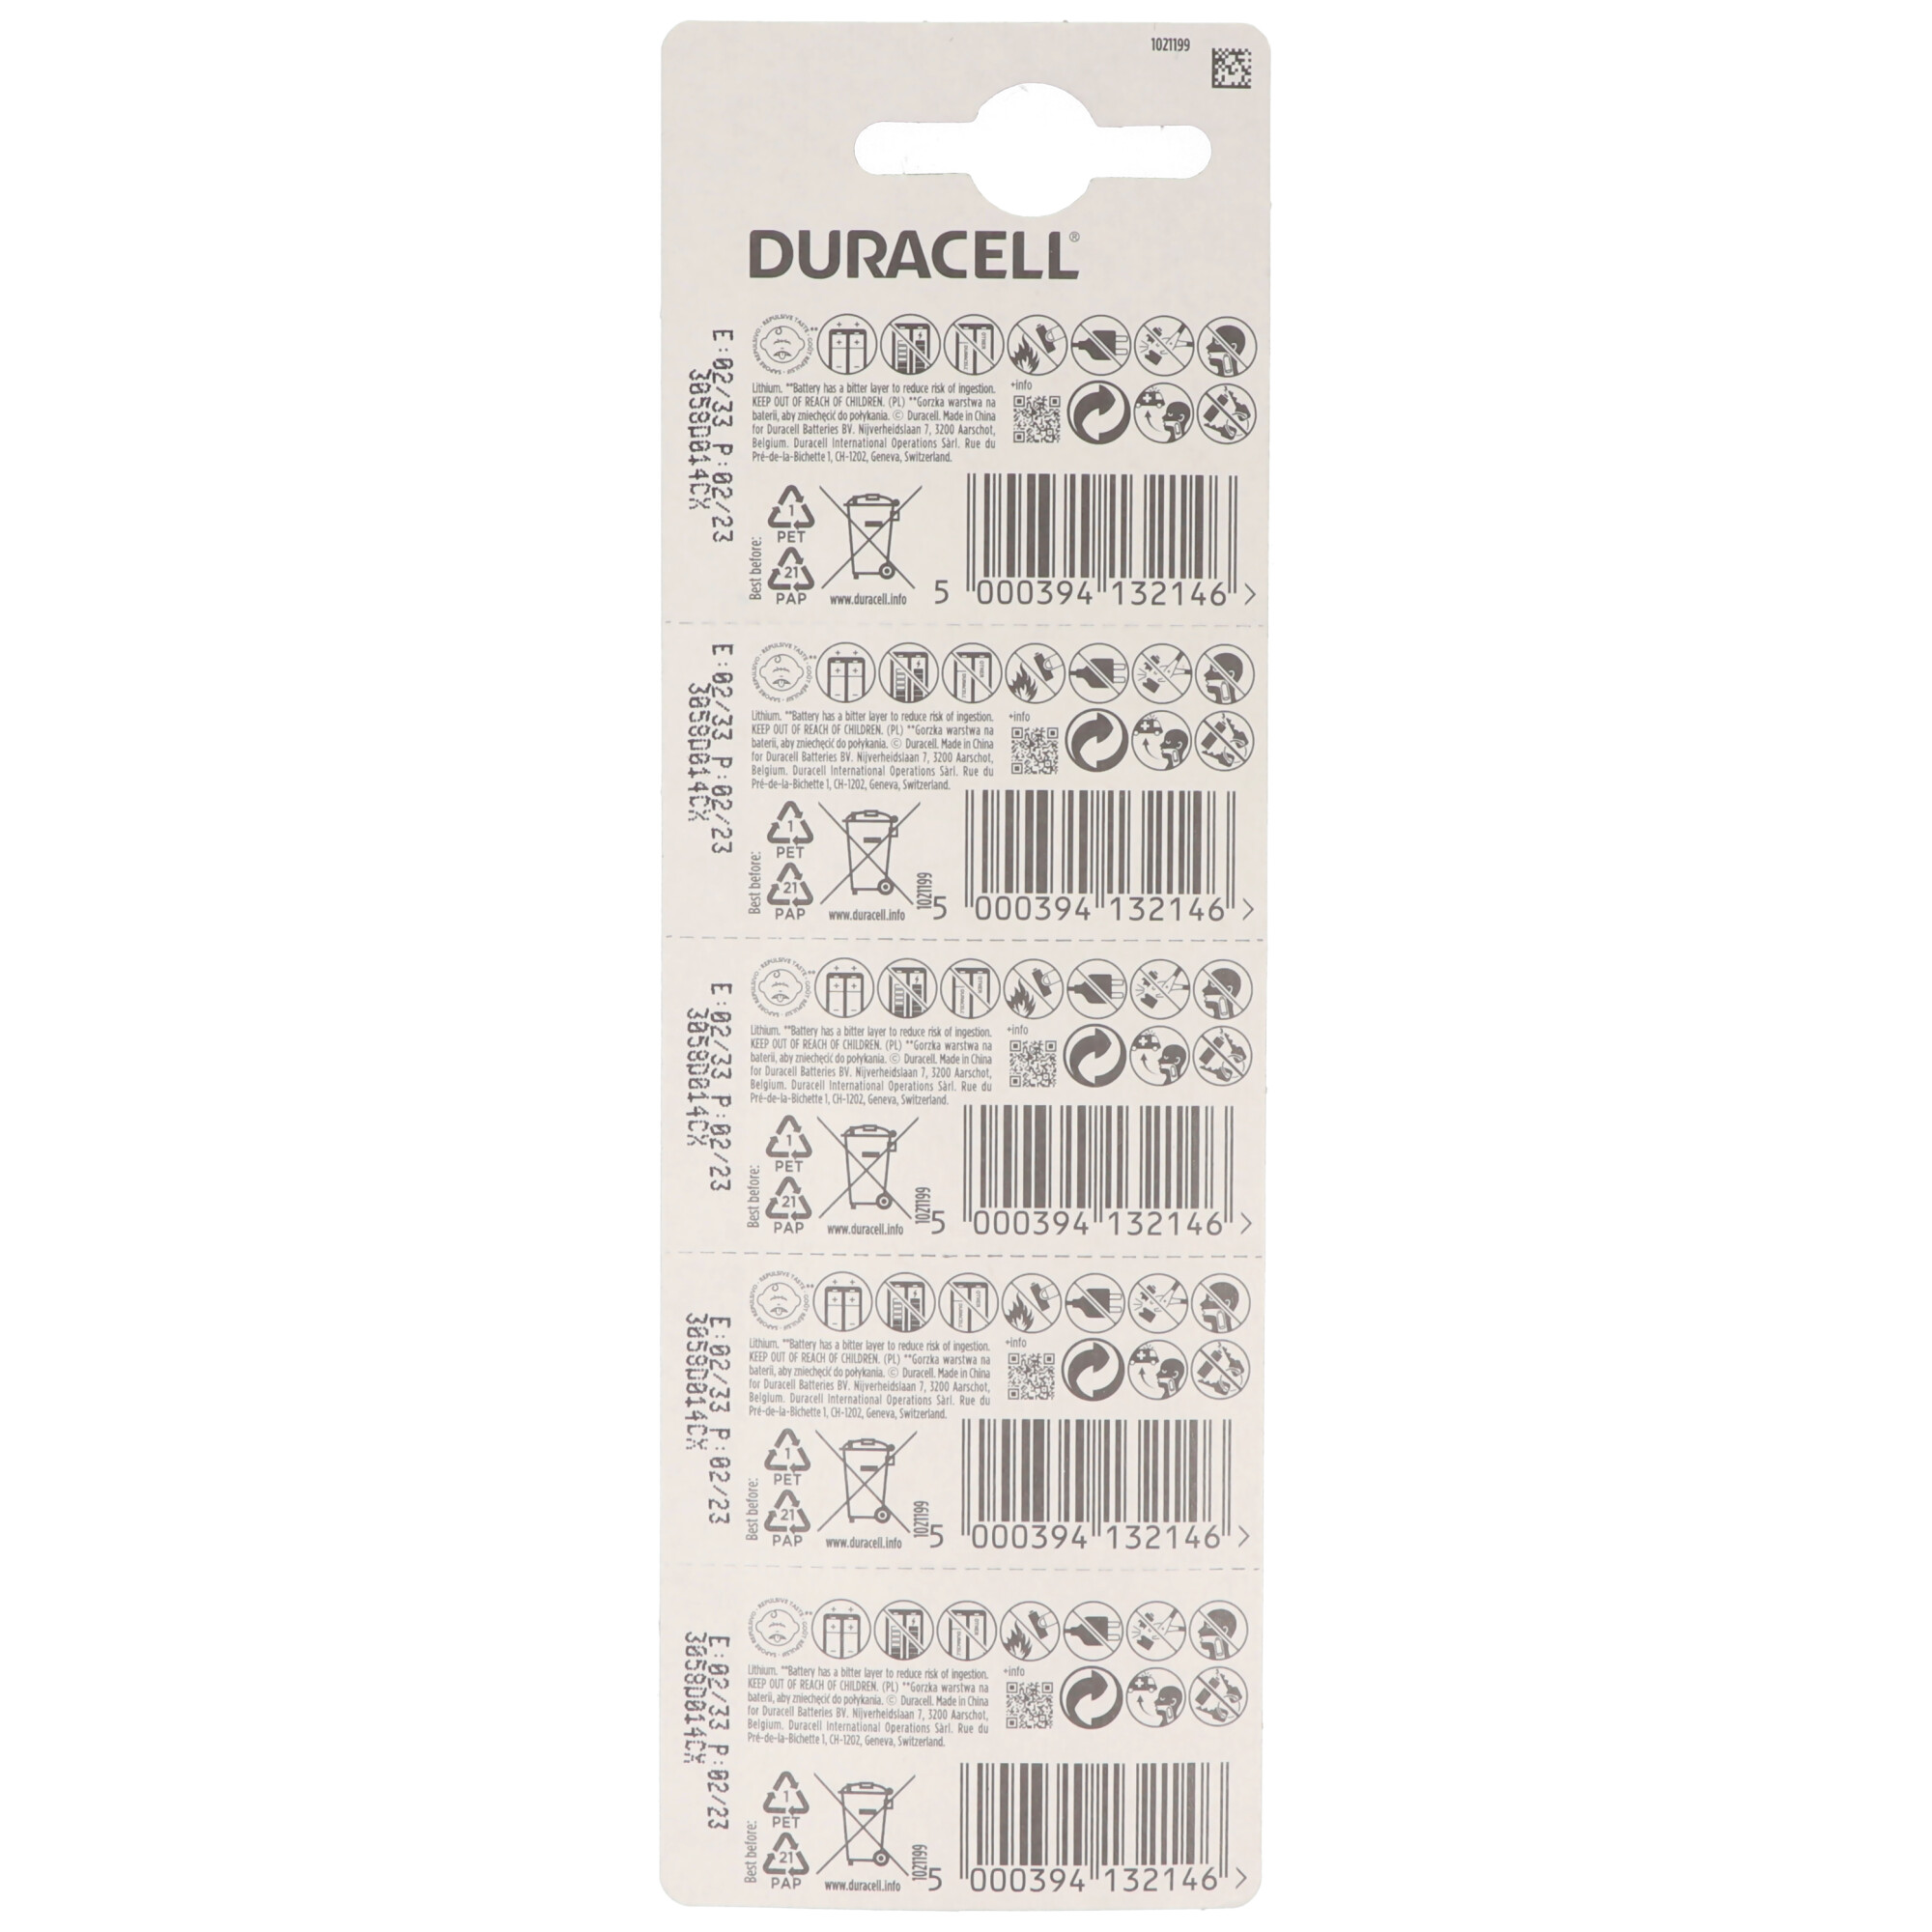 5x Duracell DL2025, CR2025 2er Blister 3 Volt Lithium Batterie